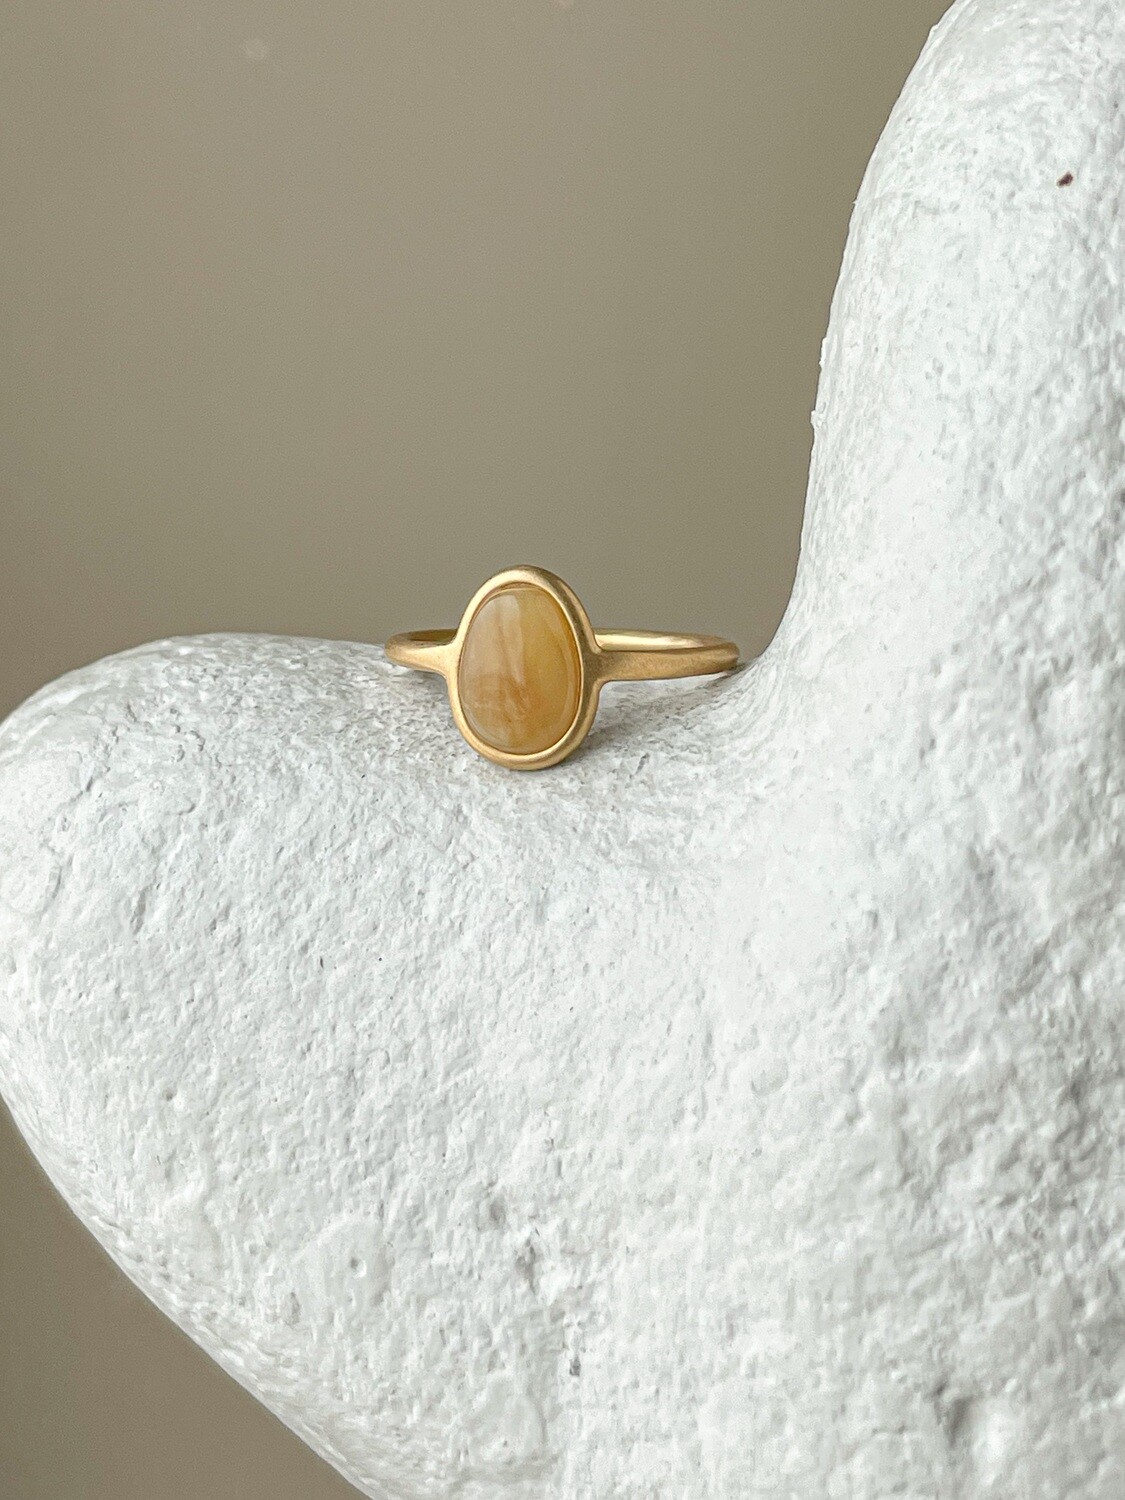 Тонкое кольцо с медовым янтарем, размер 18